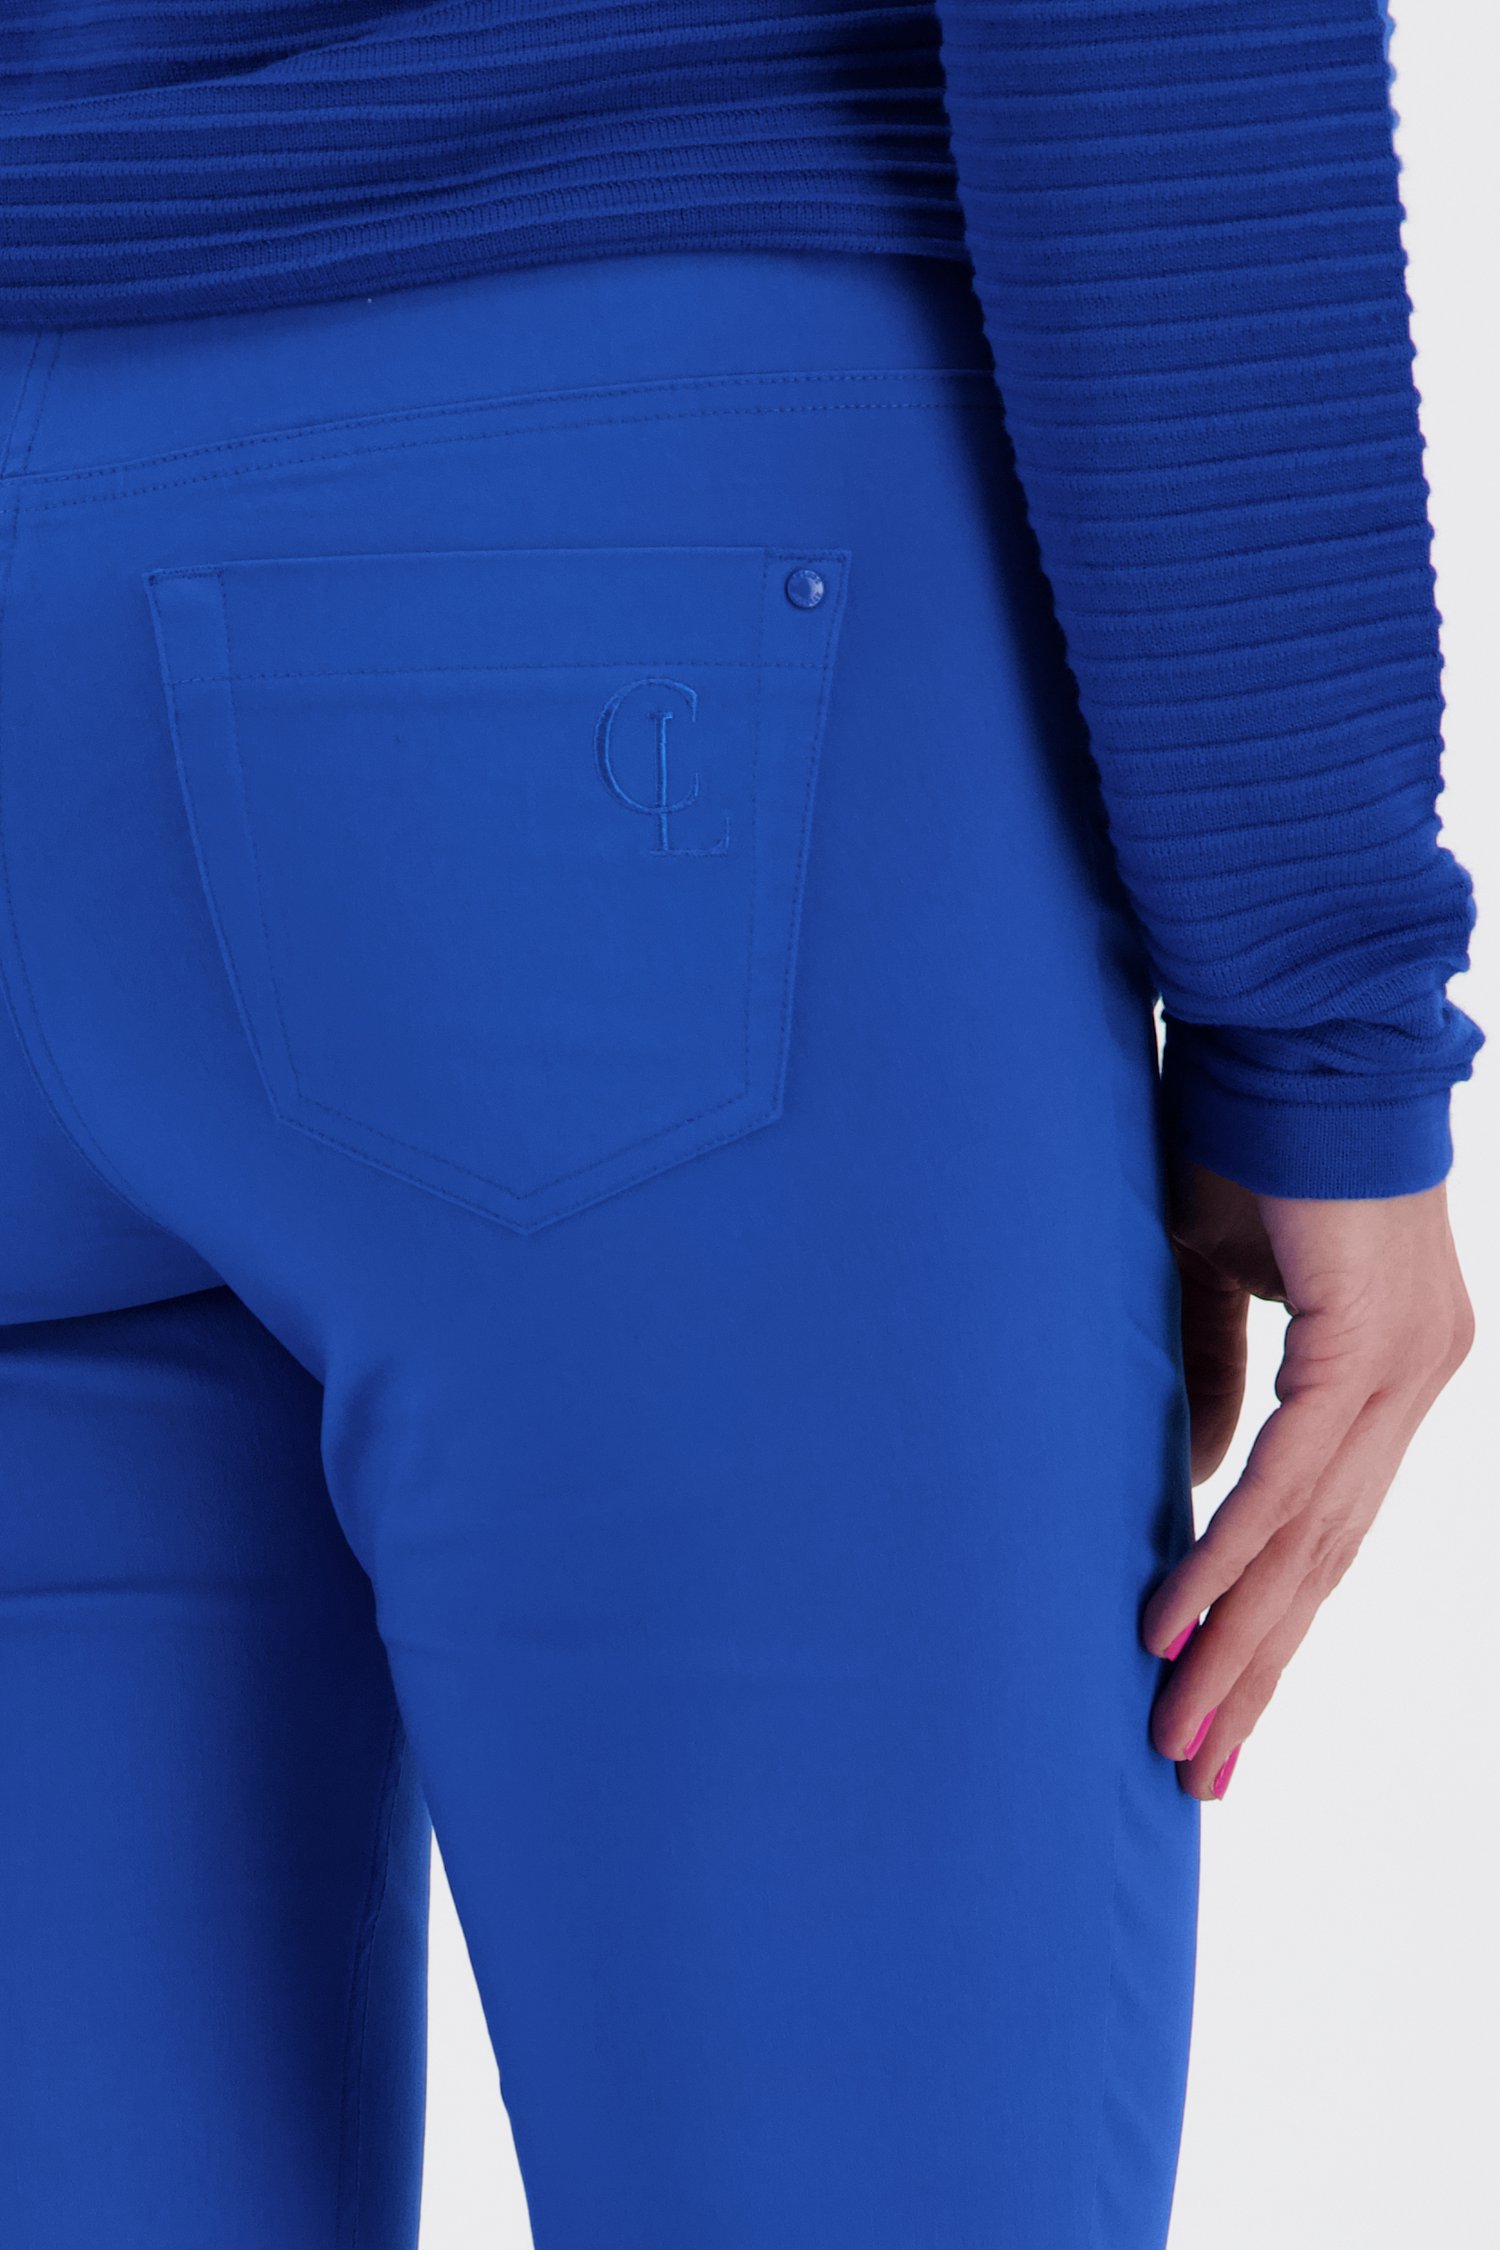 Blauwe stretchbroek met elastische tailleband van Claude Arielle voor Dames